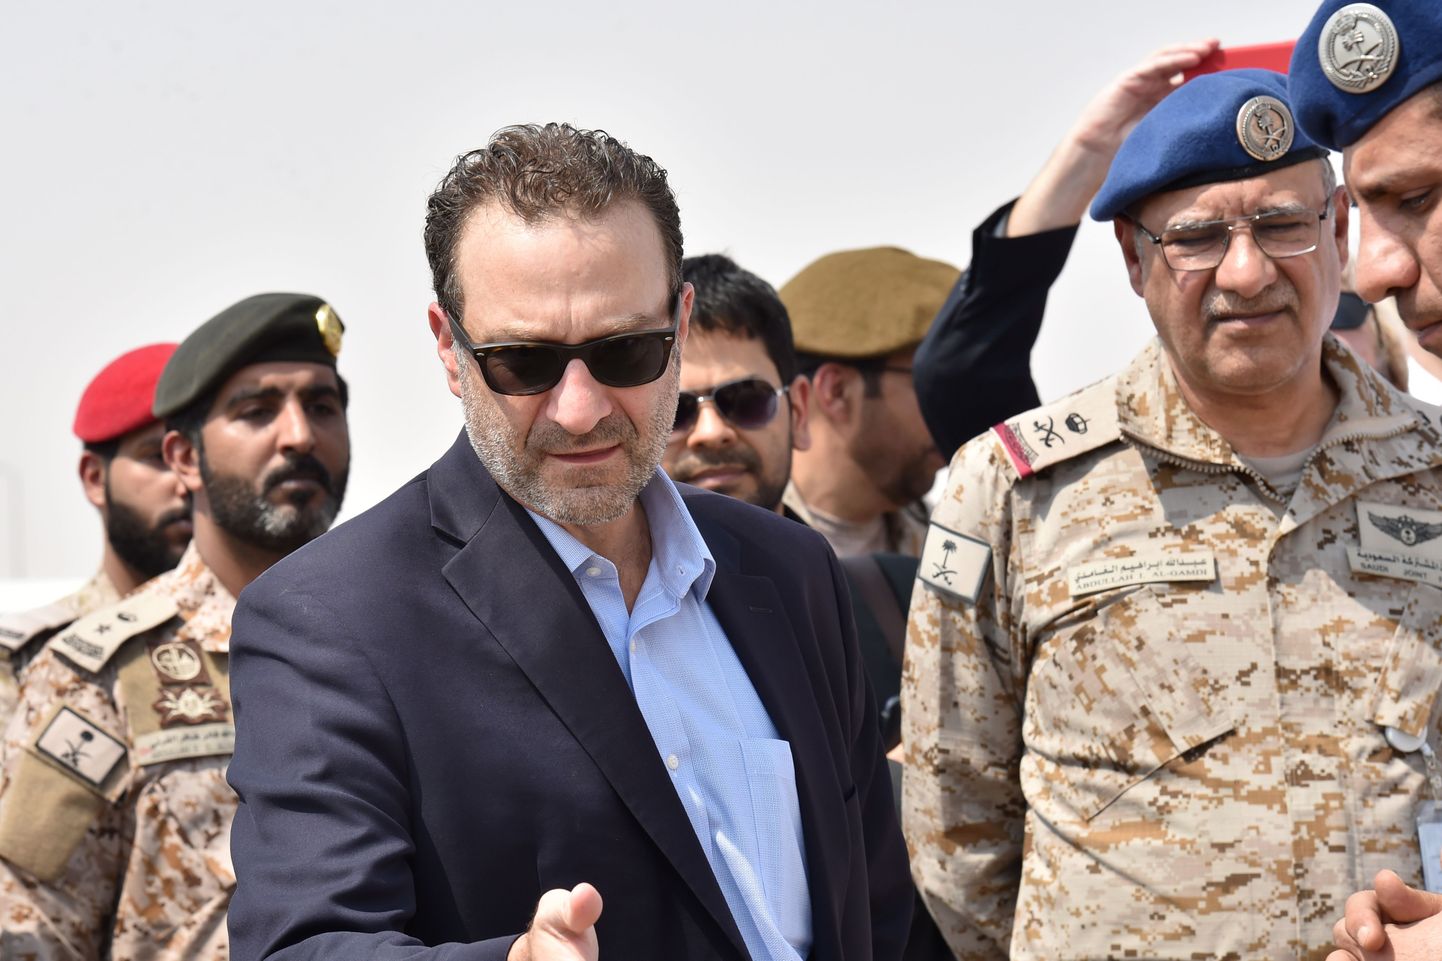 USA Lähis-Ida küsimuste abivälisminister David Schenker neljapäeval vestlemas Saudi Araabia sõjaväeohvitseridega külaskäigul Al-Kharji sõjaväebaasi riigi keskosas.